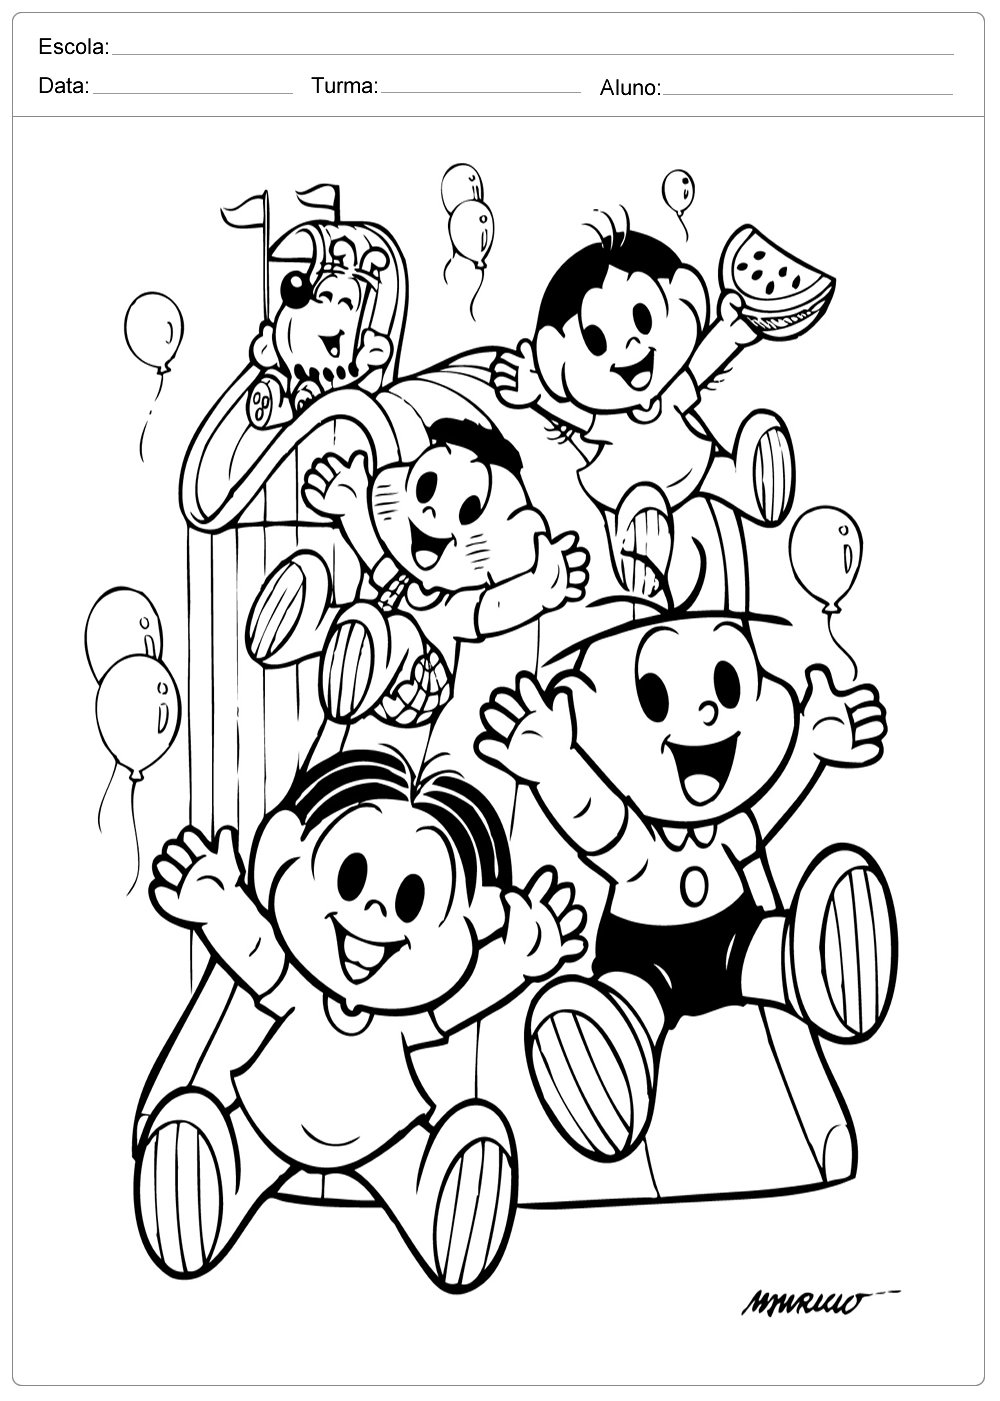 Desenhos para Colorir - Dia das Crianças - Atividades